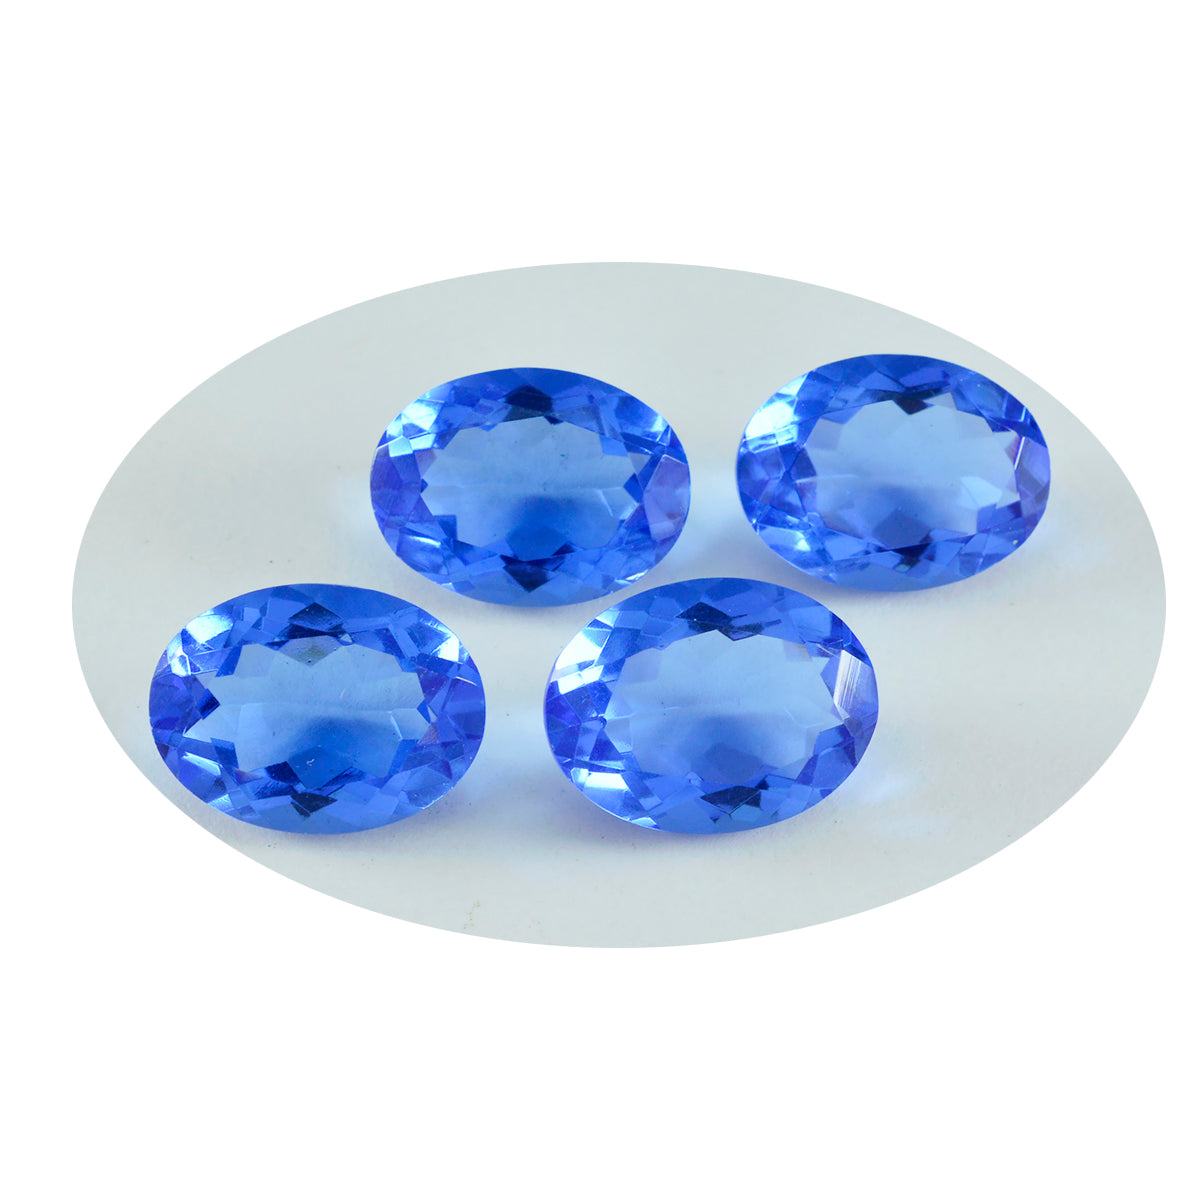 riyogems 1шт синий сапфир cz ограненный 10x14 мм овальная форма привлекательное качество россыпь драгоценных камней